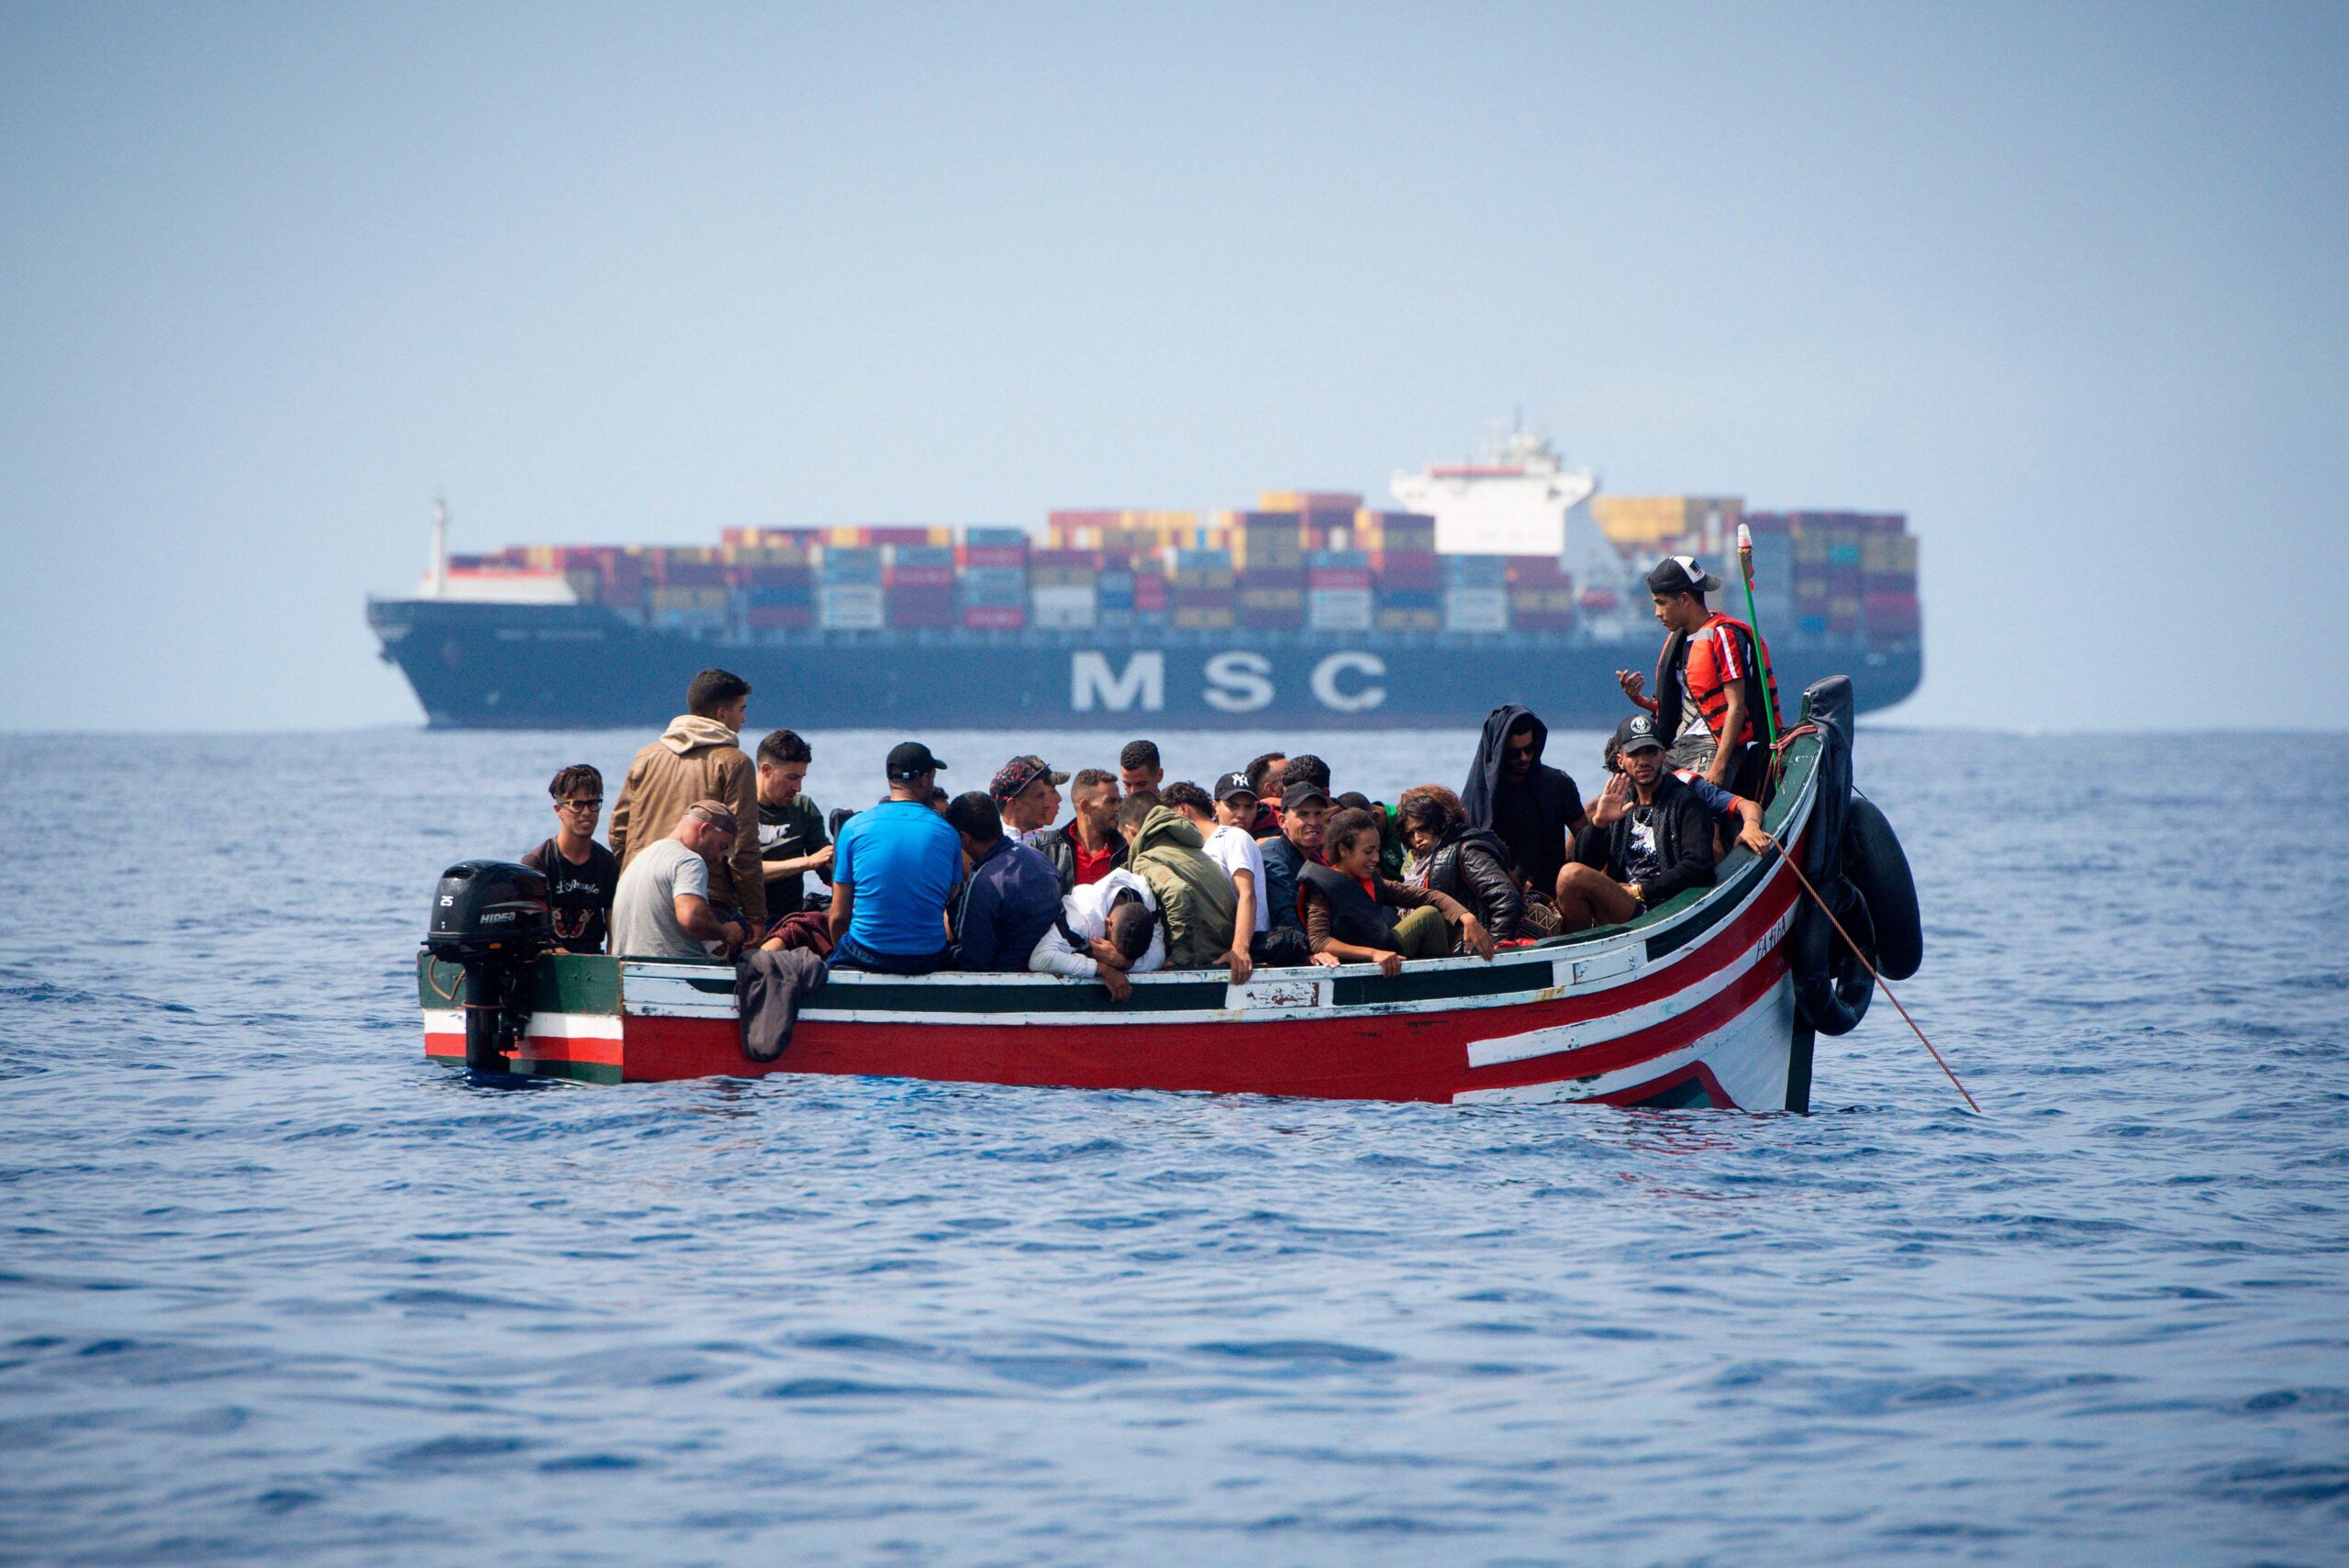 مساعي يونانية للحد من الهجرة غير الشرعية القادمة إليها من ليبيا